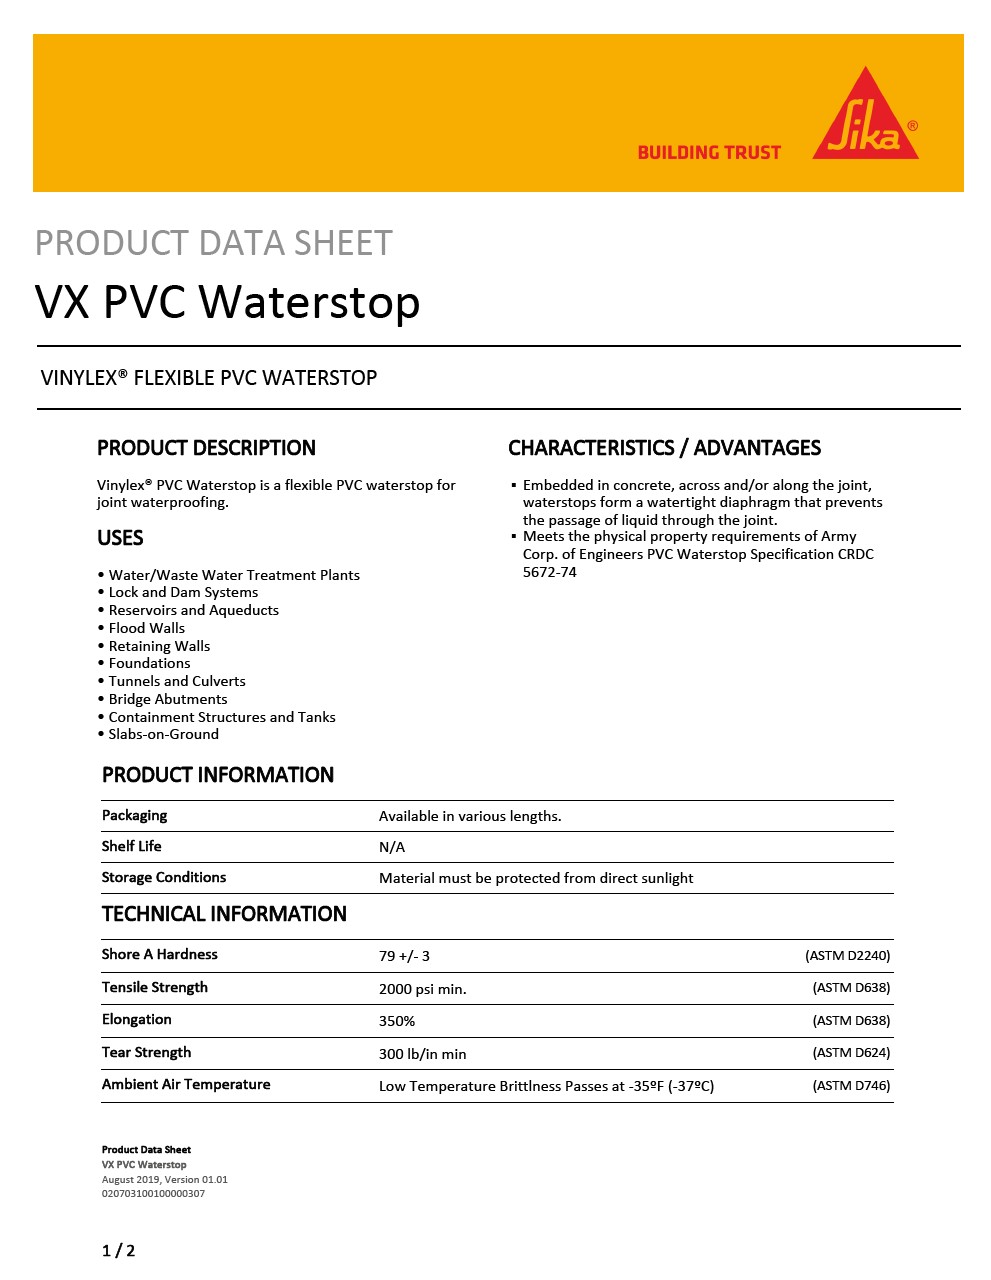 Vinylex PVC Waterstop